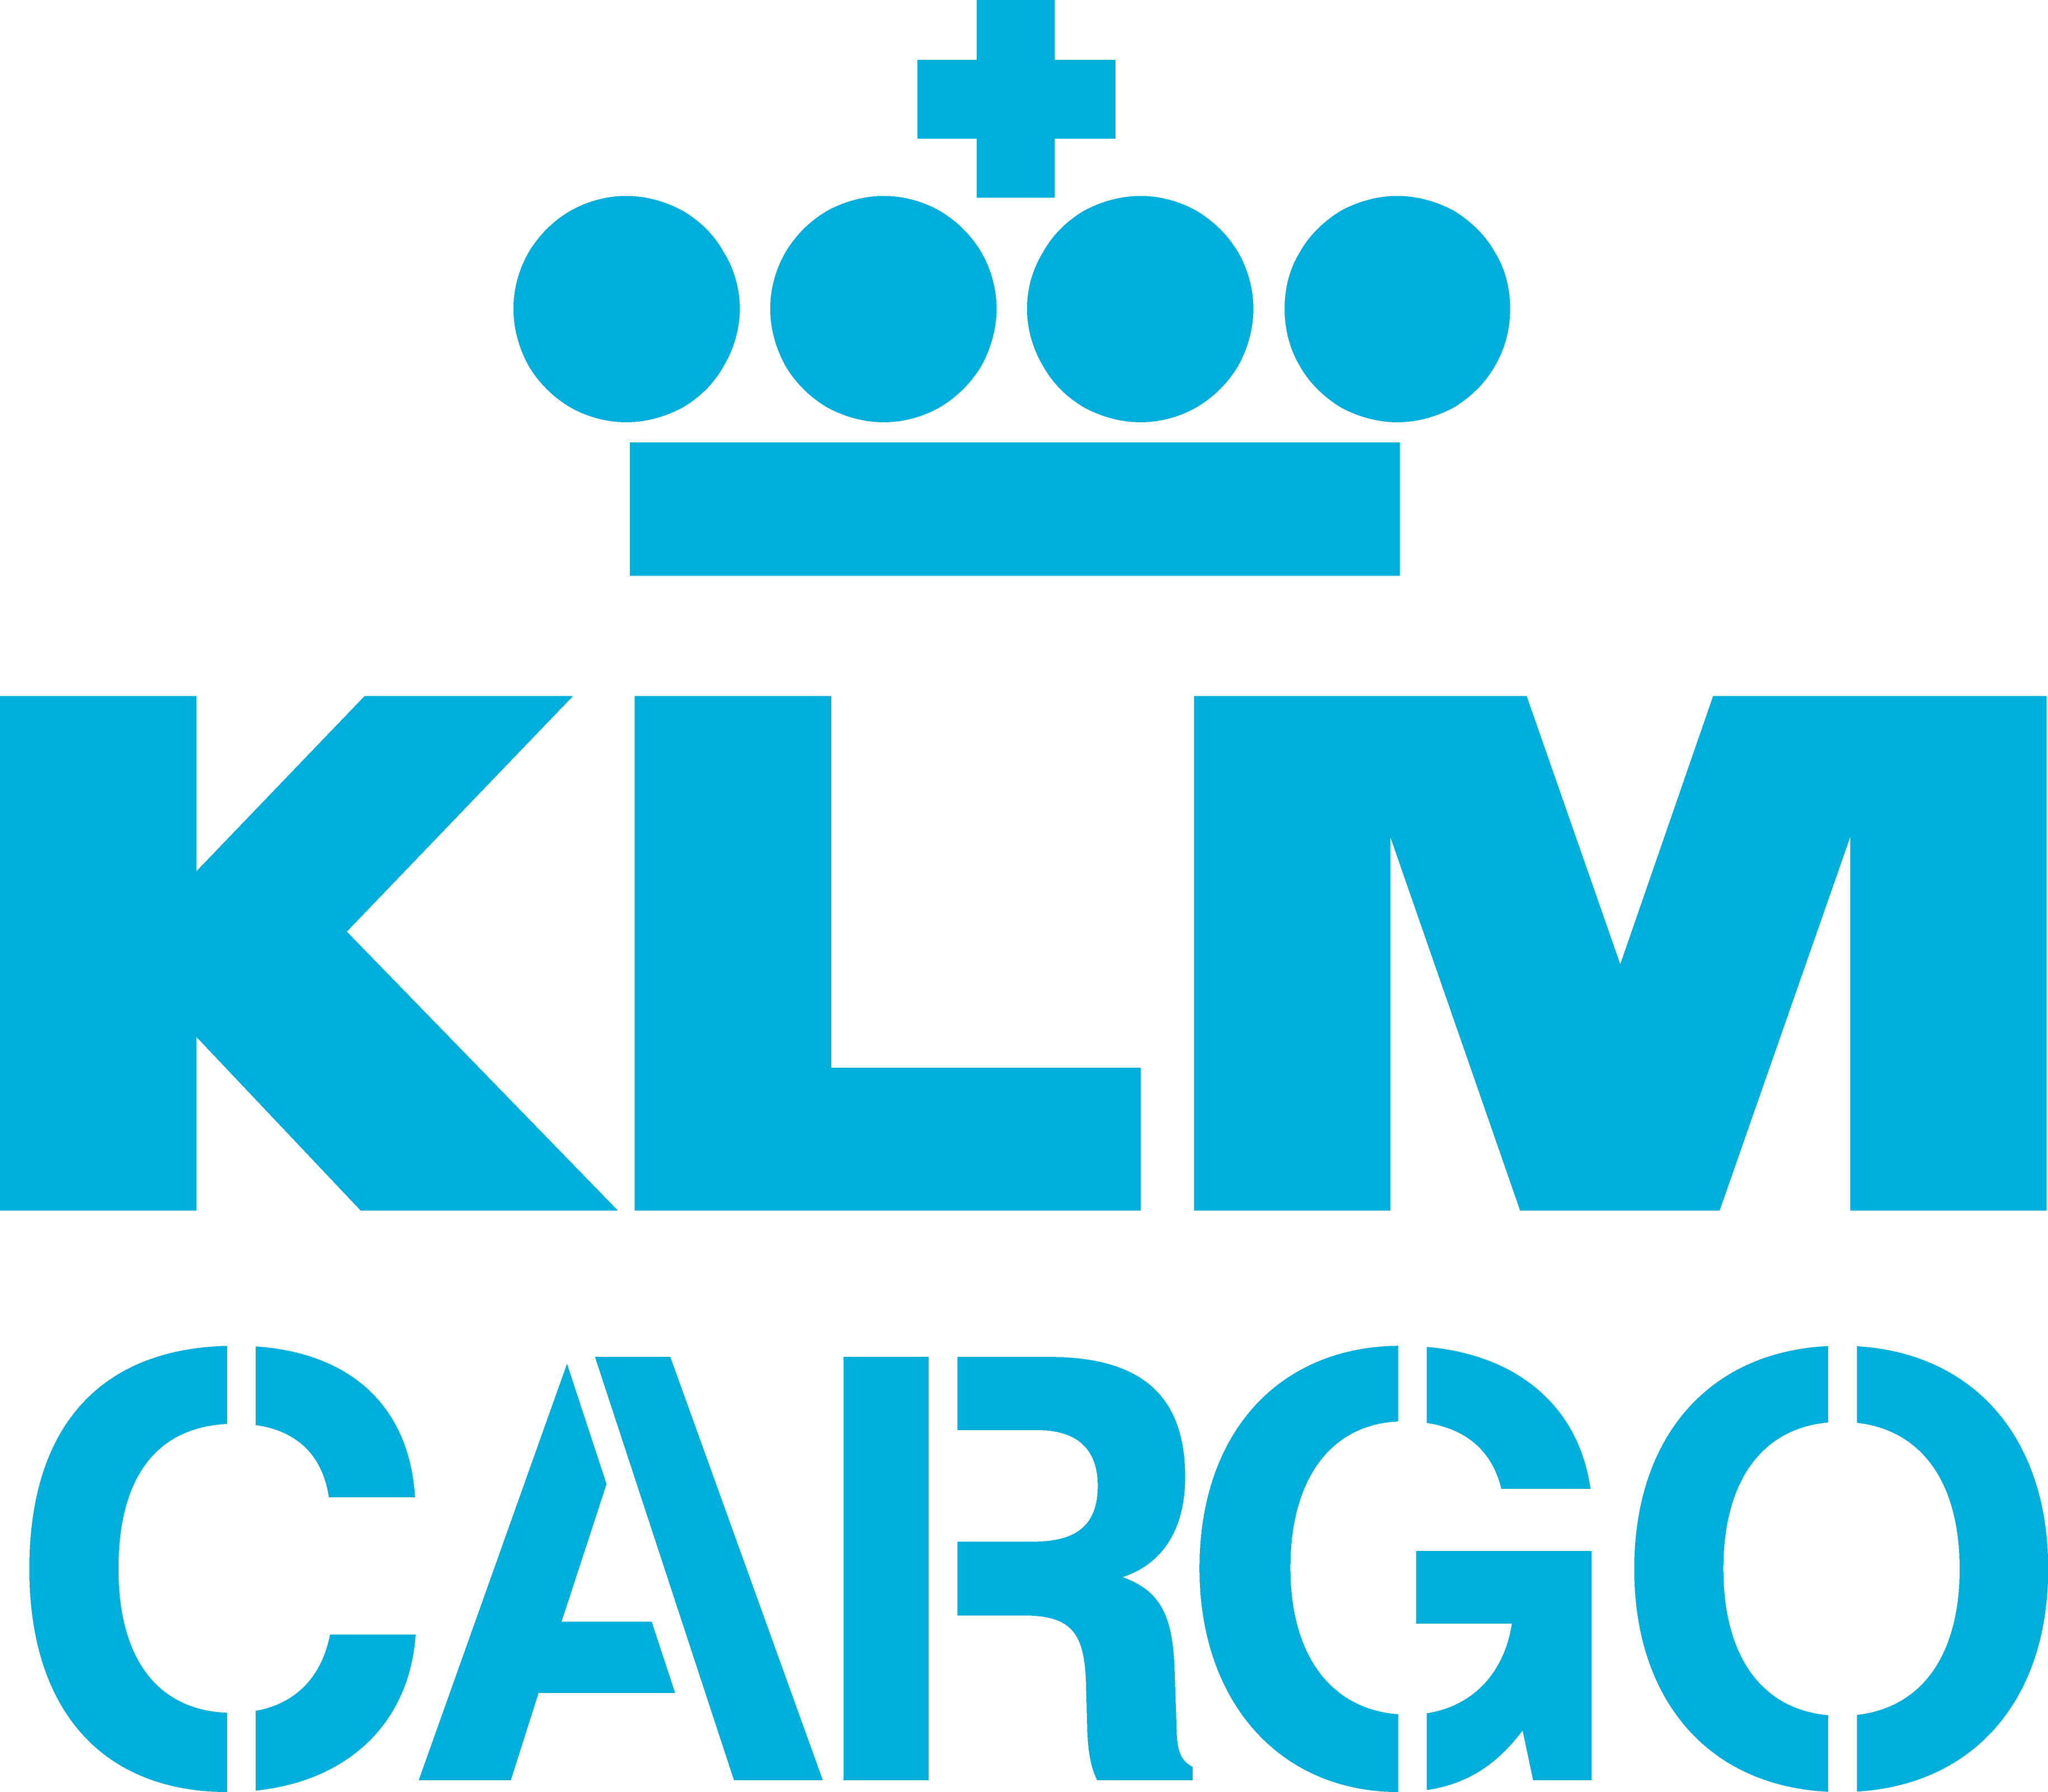 logo KLM Cargo